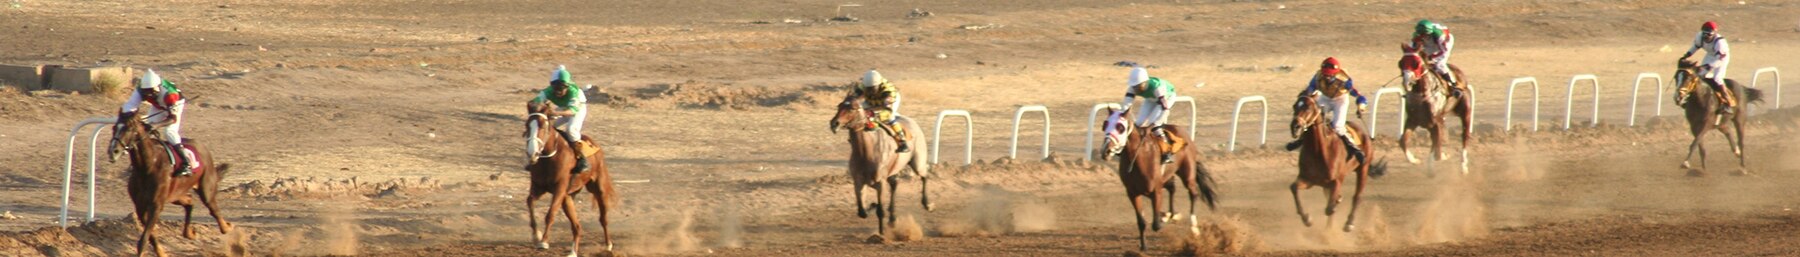 Xartum banner Horse racing.jpg